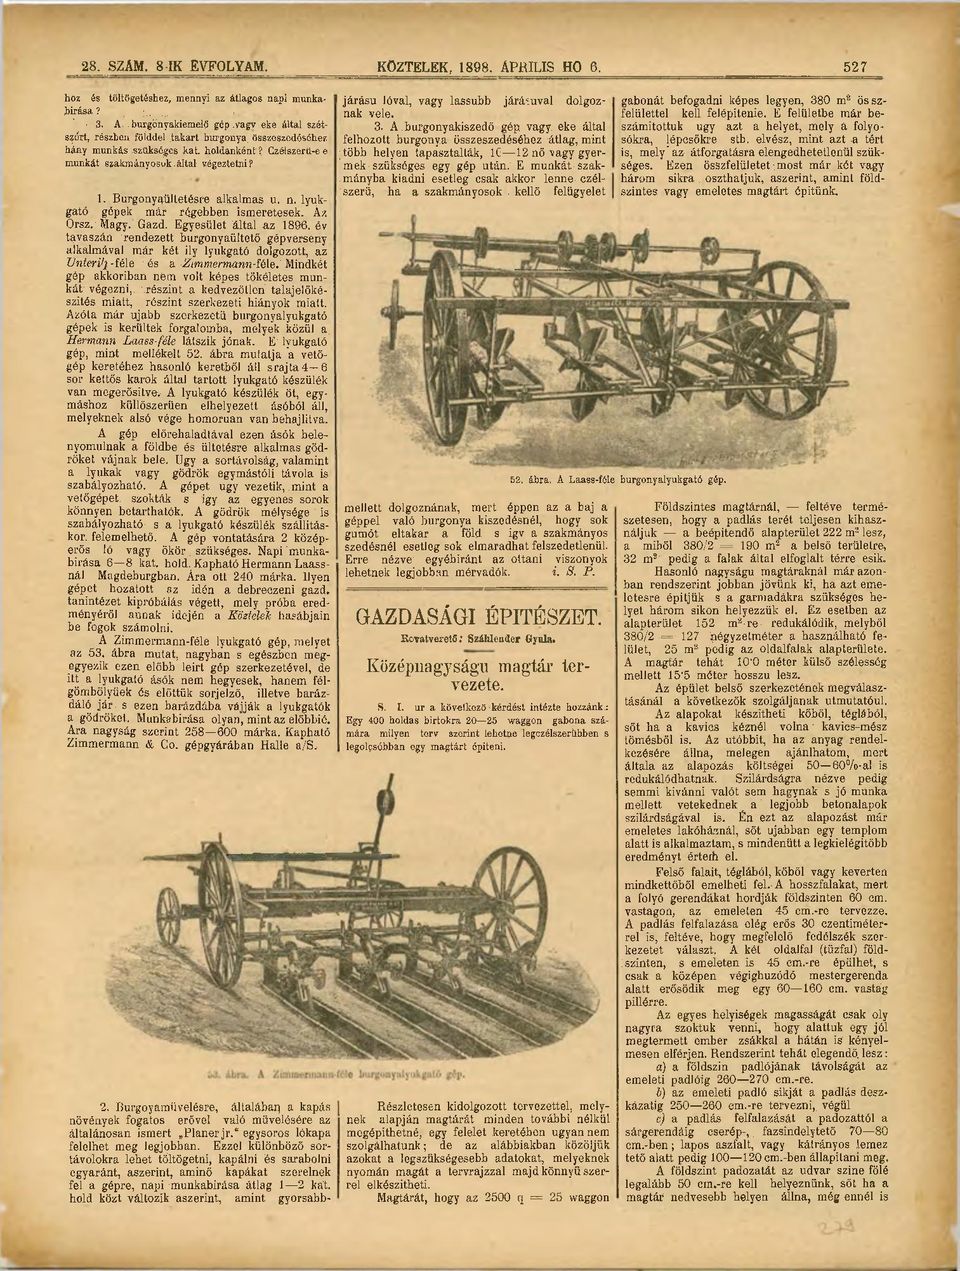 lyukgató gépek már régebben ismeretesek. Áz Orsz. Magy. Gazd. Egyesület által az 1896.